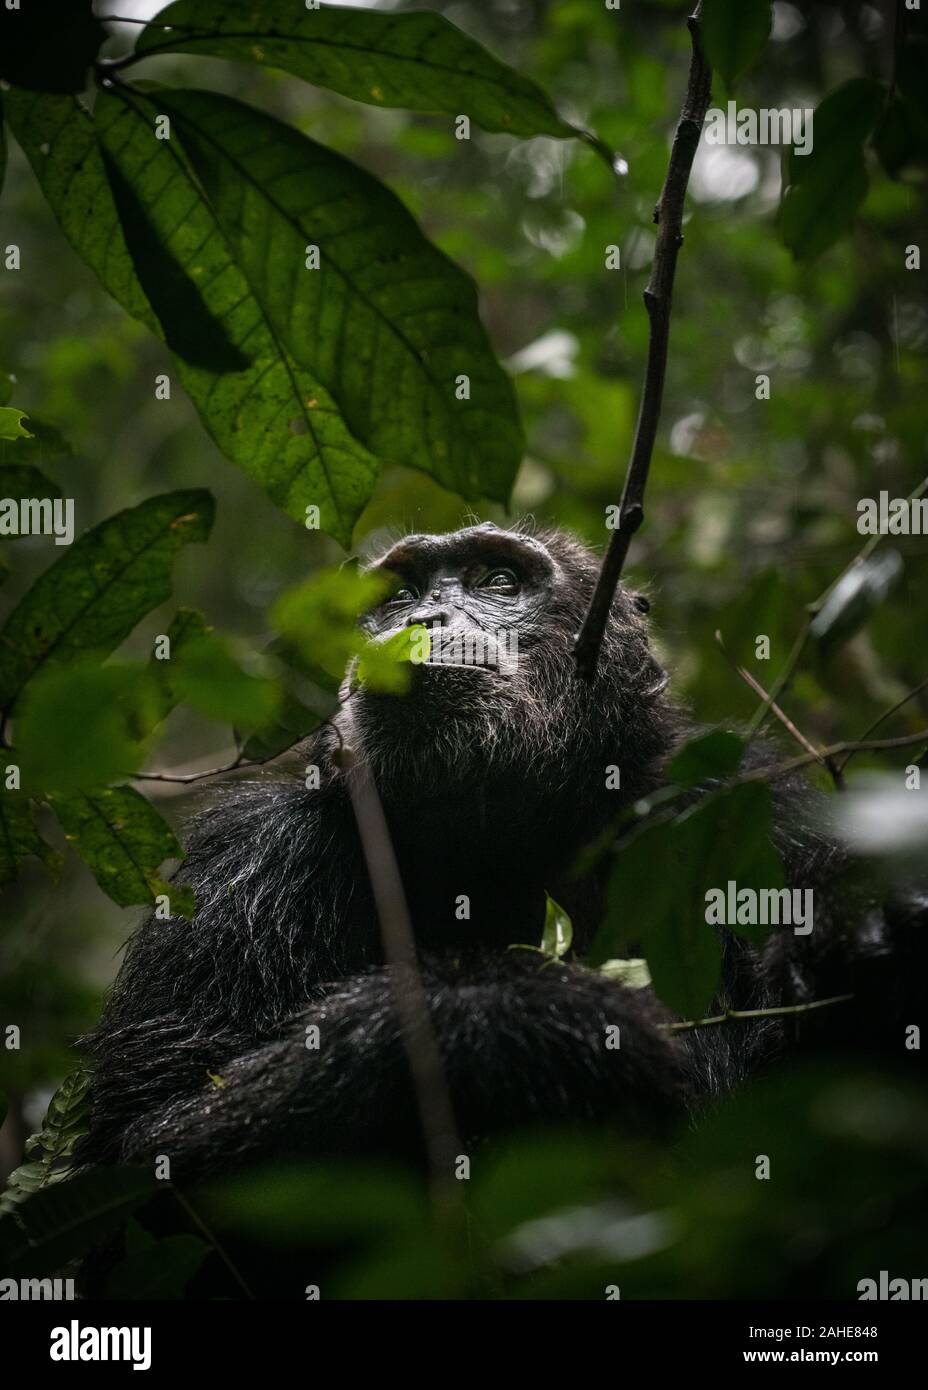 Wild chimpanzee in Kibale forest in Uganda. Stock Photo